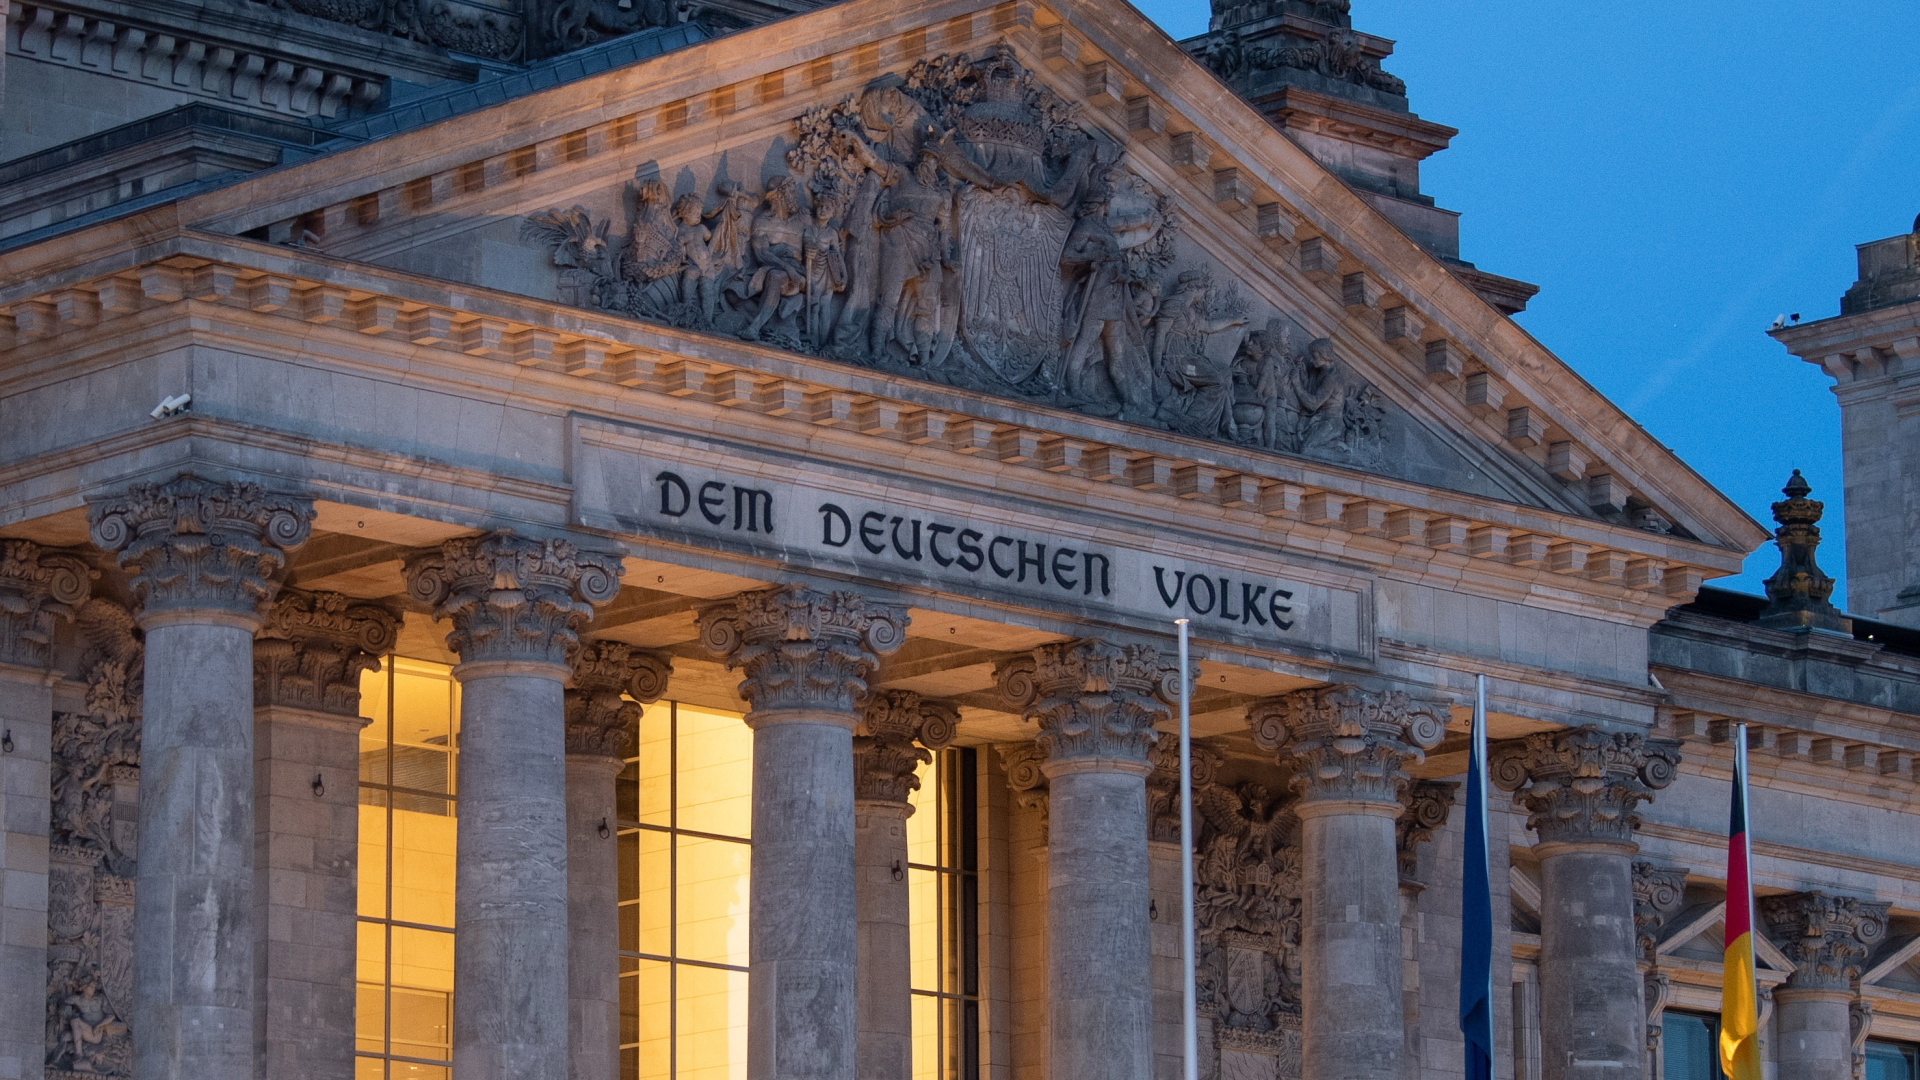 Blick auf die Inschrift "Dem deutschen Volke" am Reichstagsgebäude | dpa